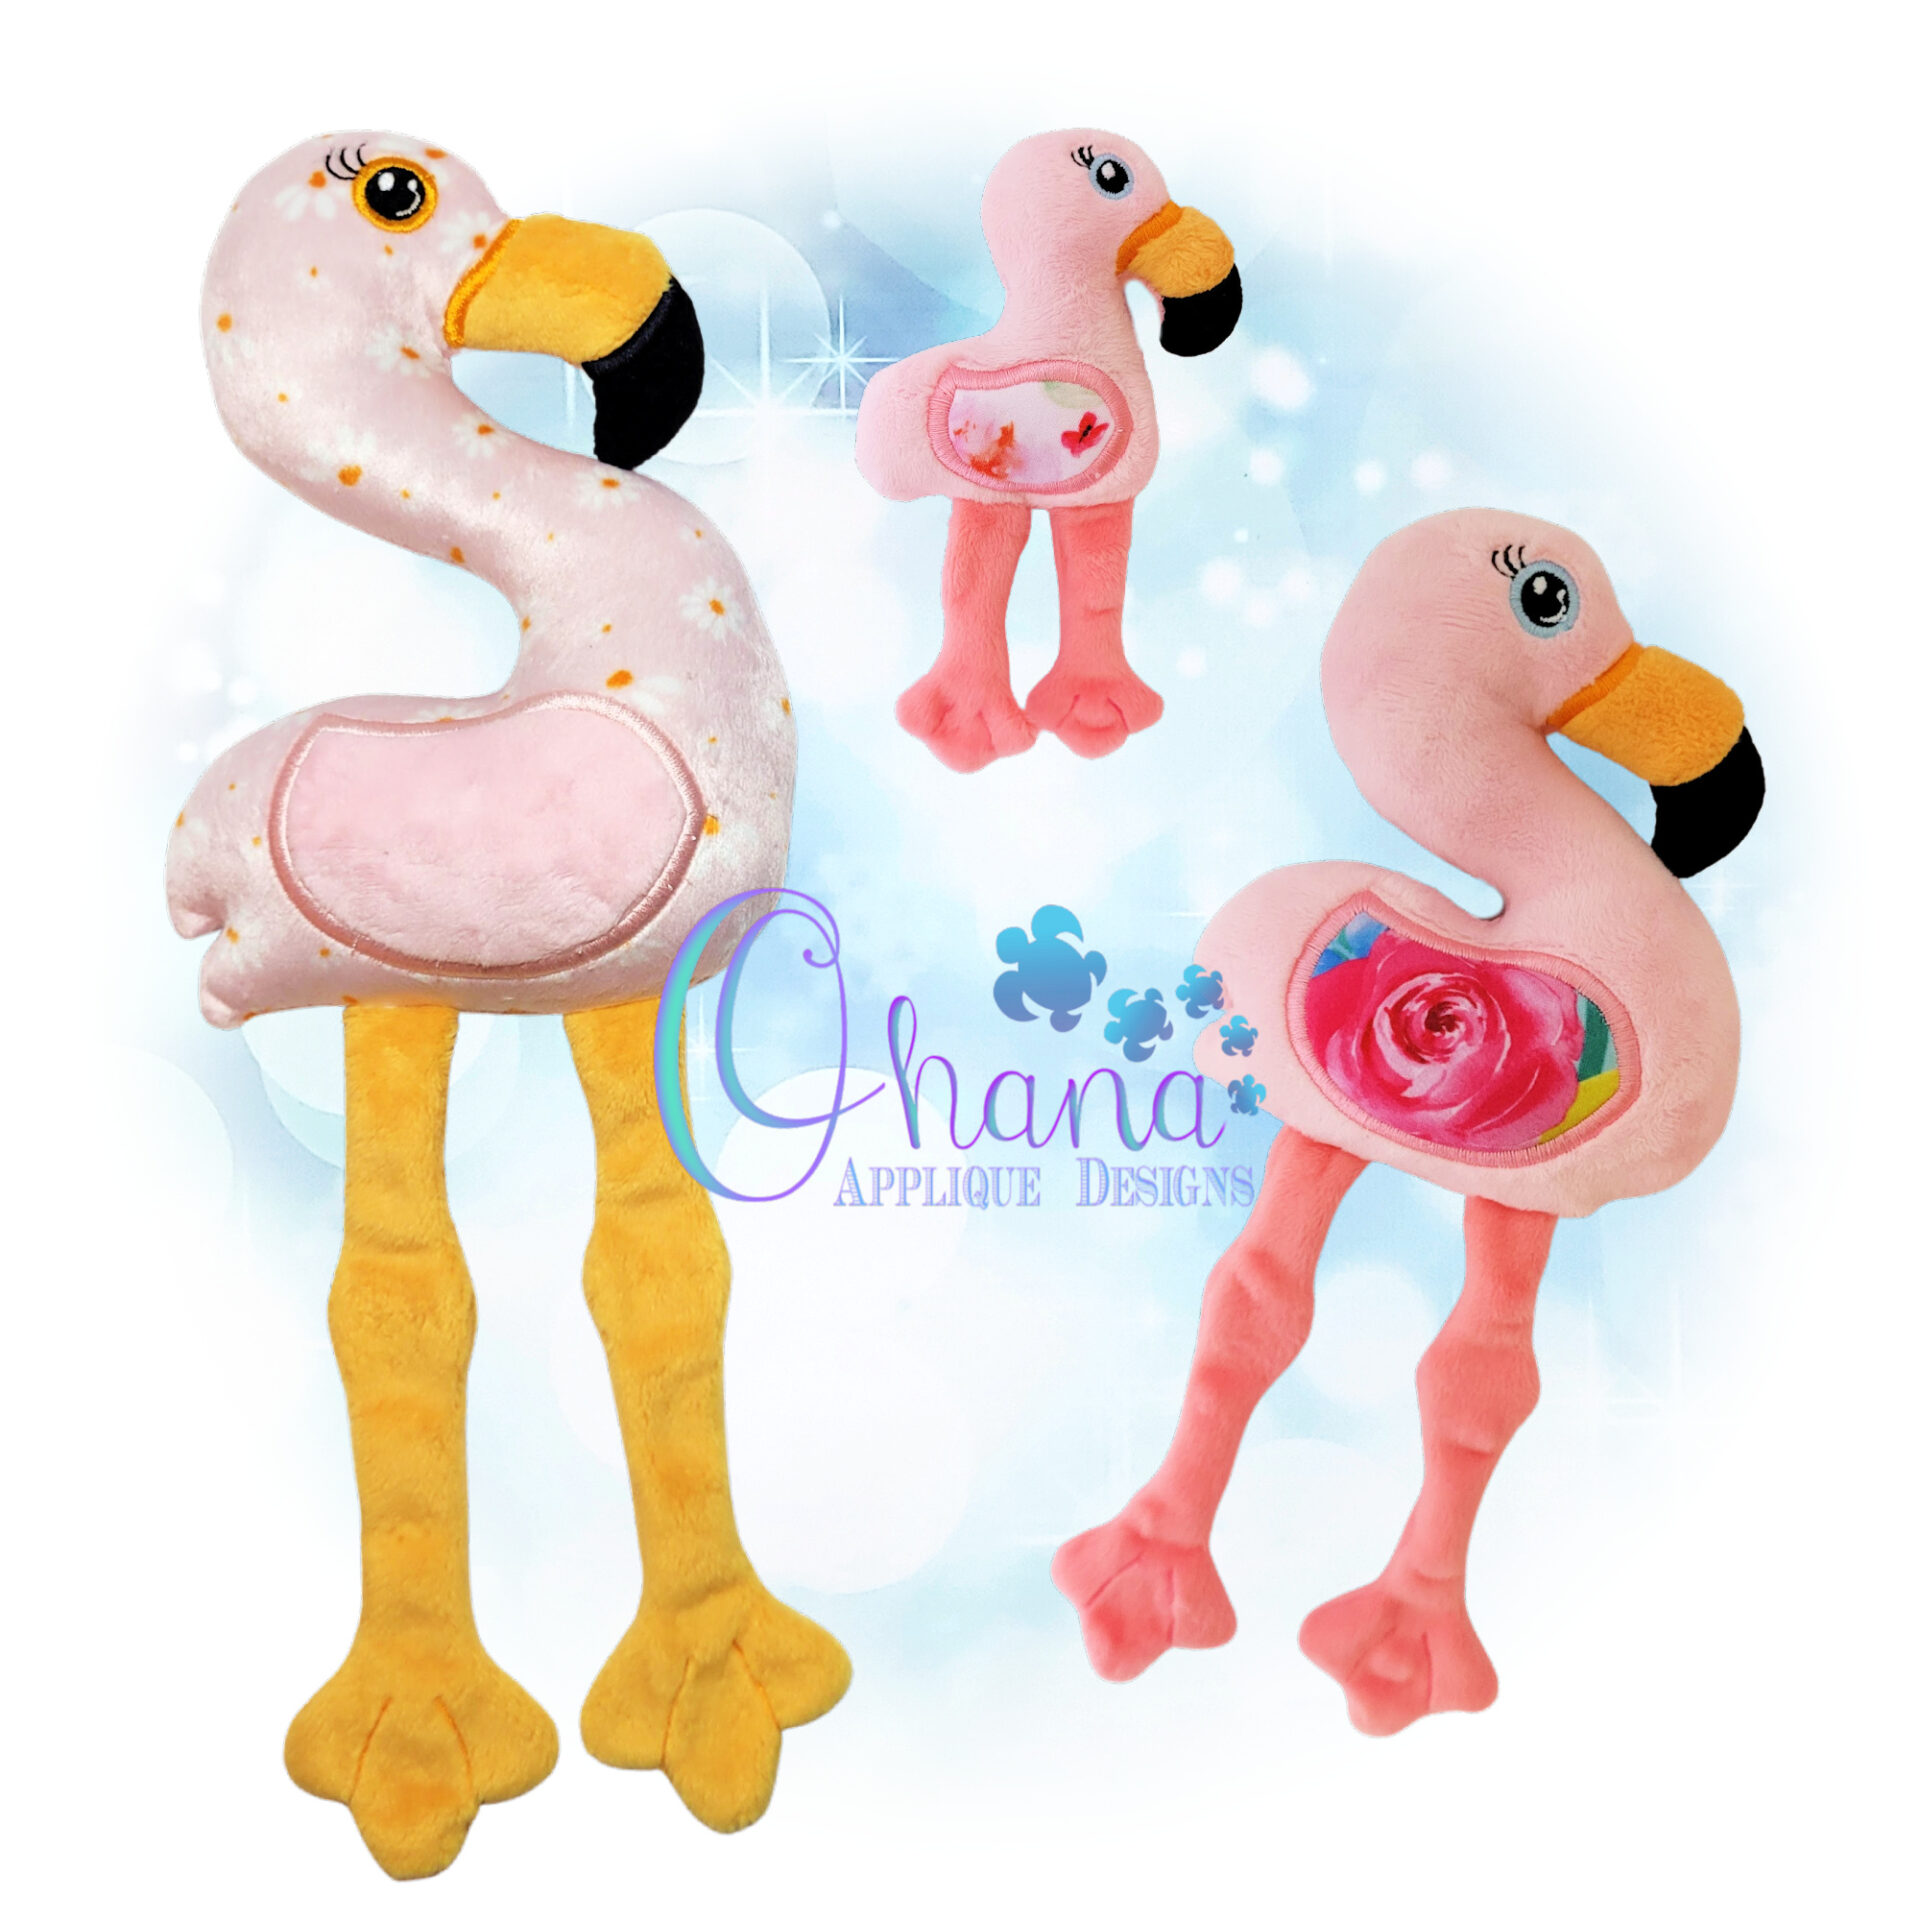 OAD Fiona Flamingo REV SJ 2000